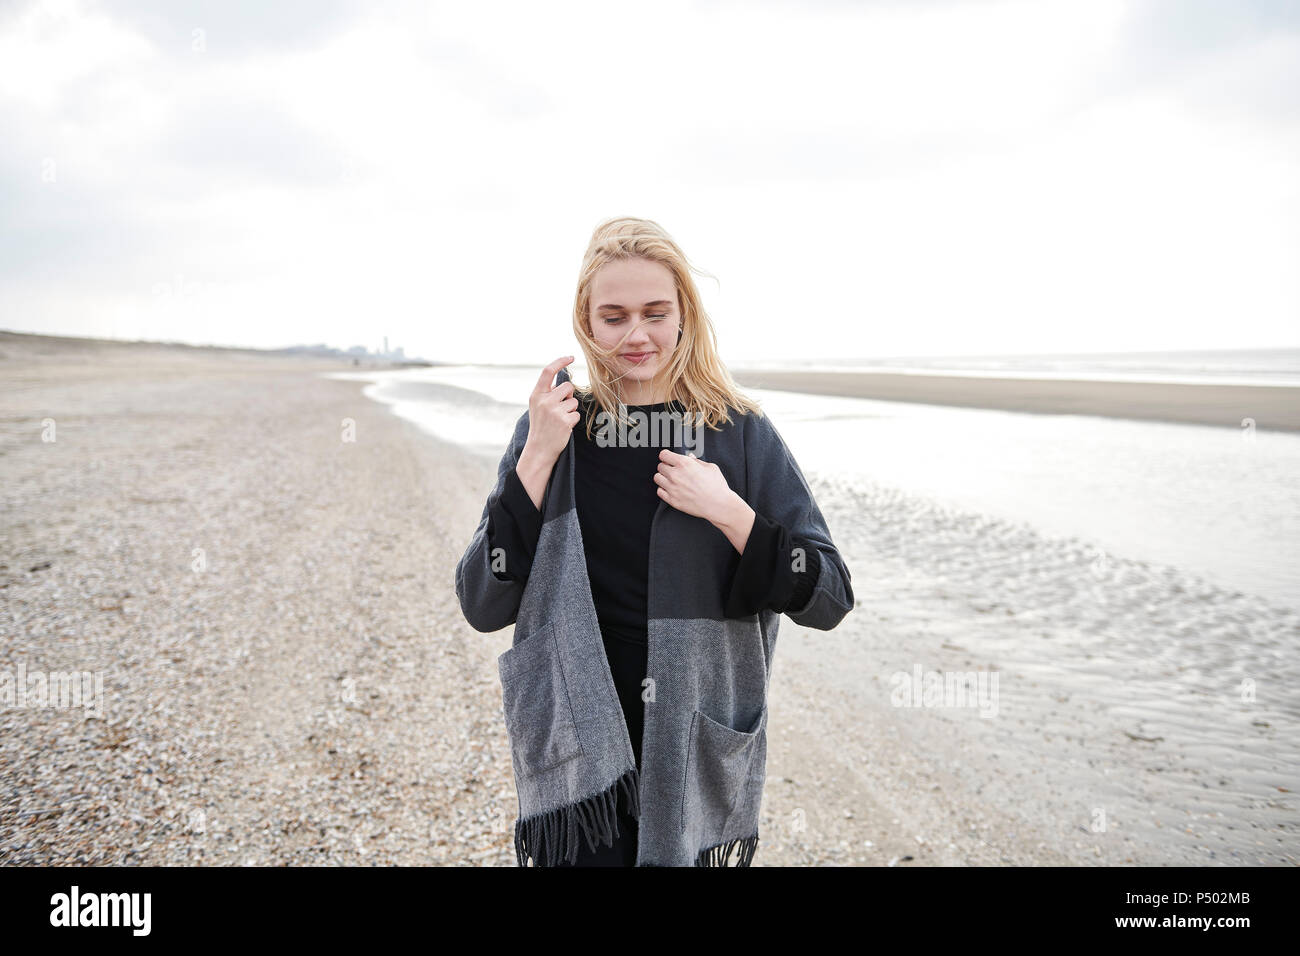 Pays-bas, blonde jeune femme portant veste grise sur la plage Banque D'Images